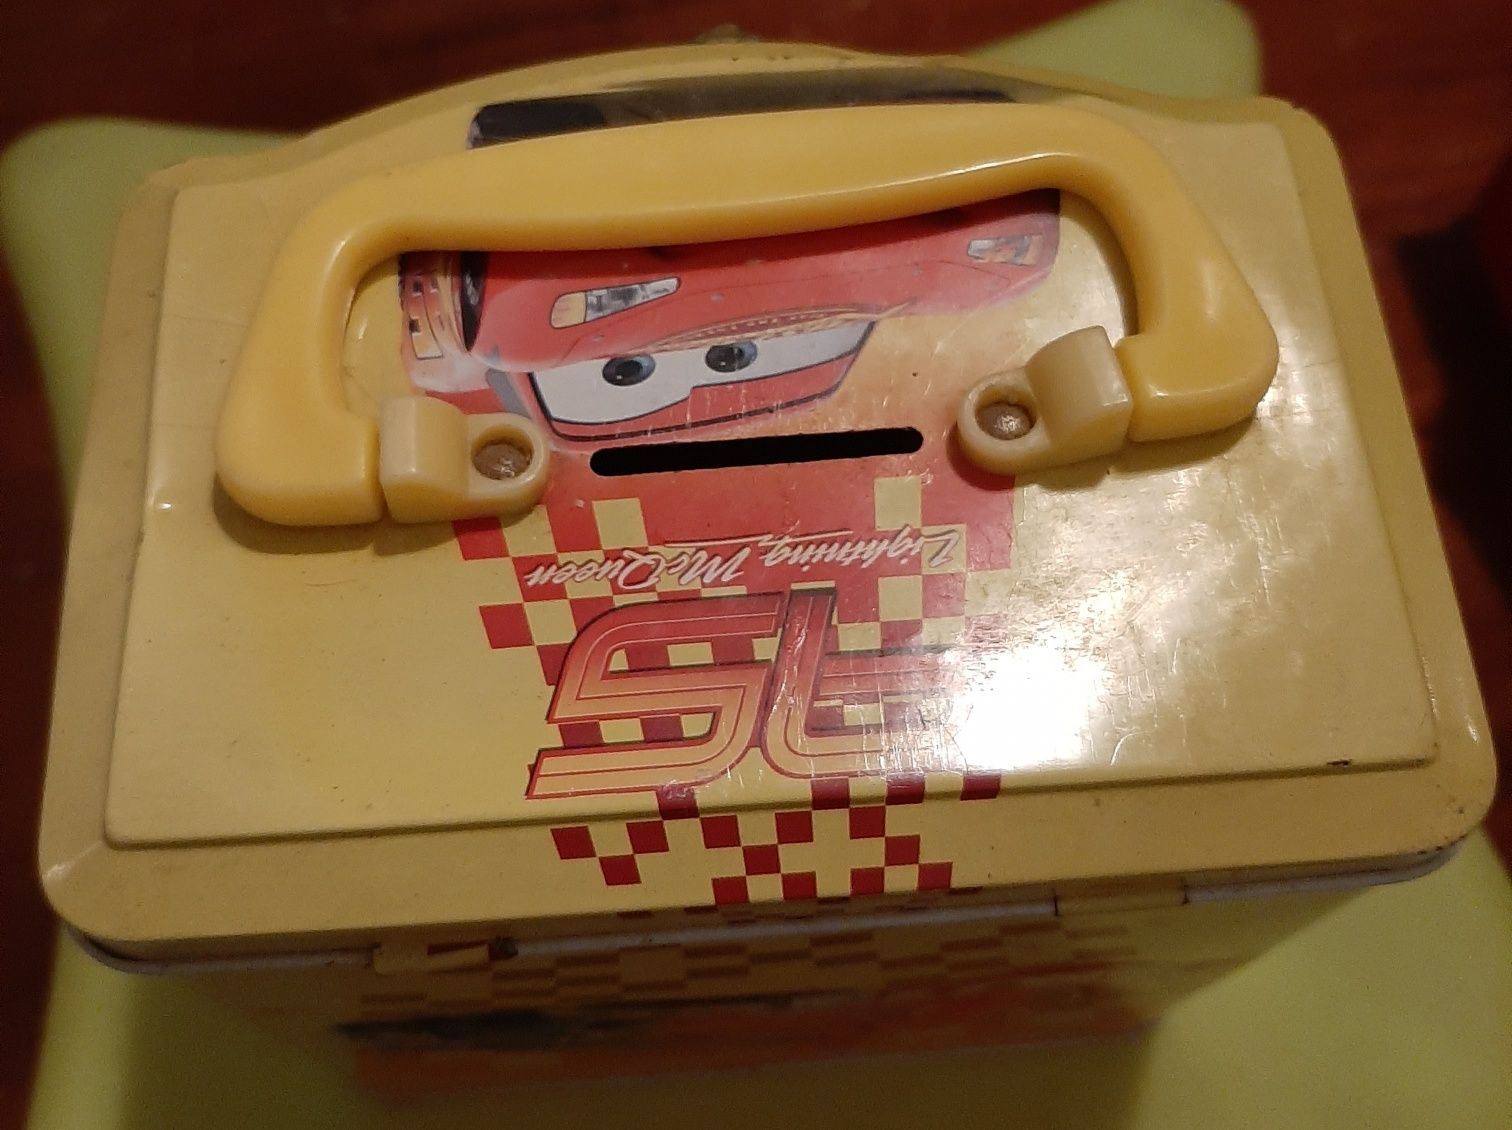 Mealheiro da Disney Pixar - "The world of cars"